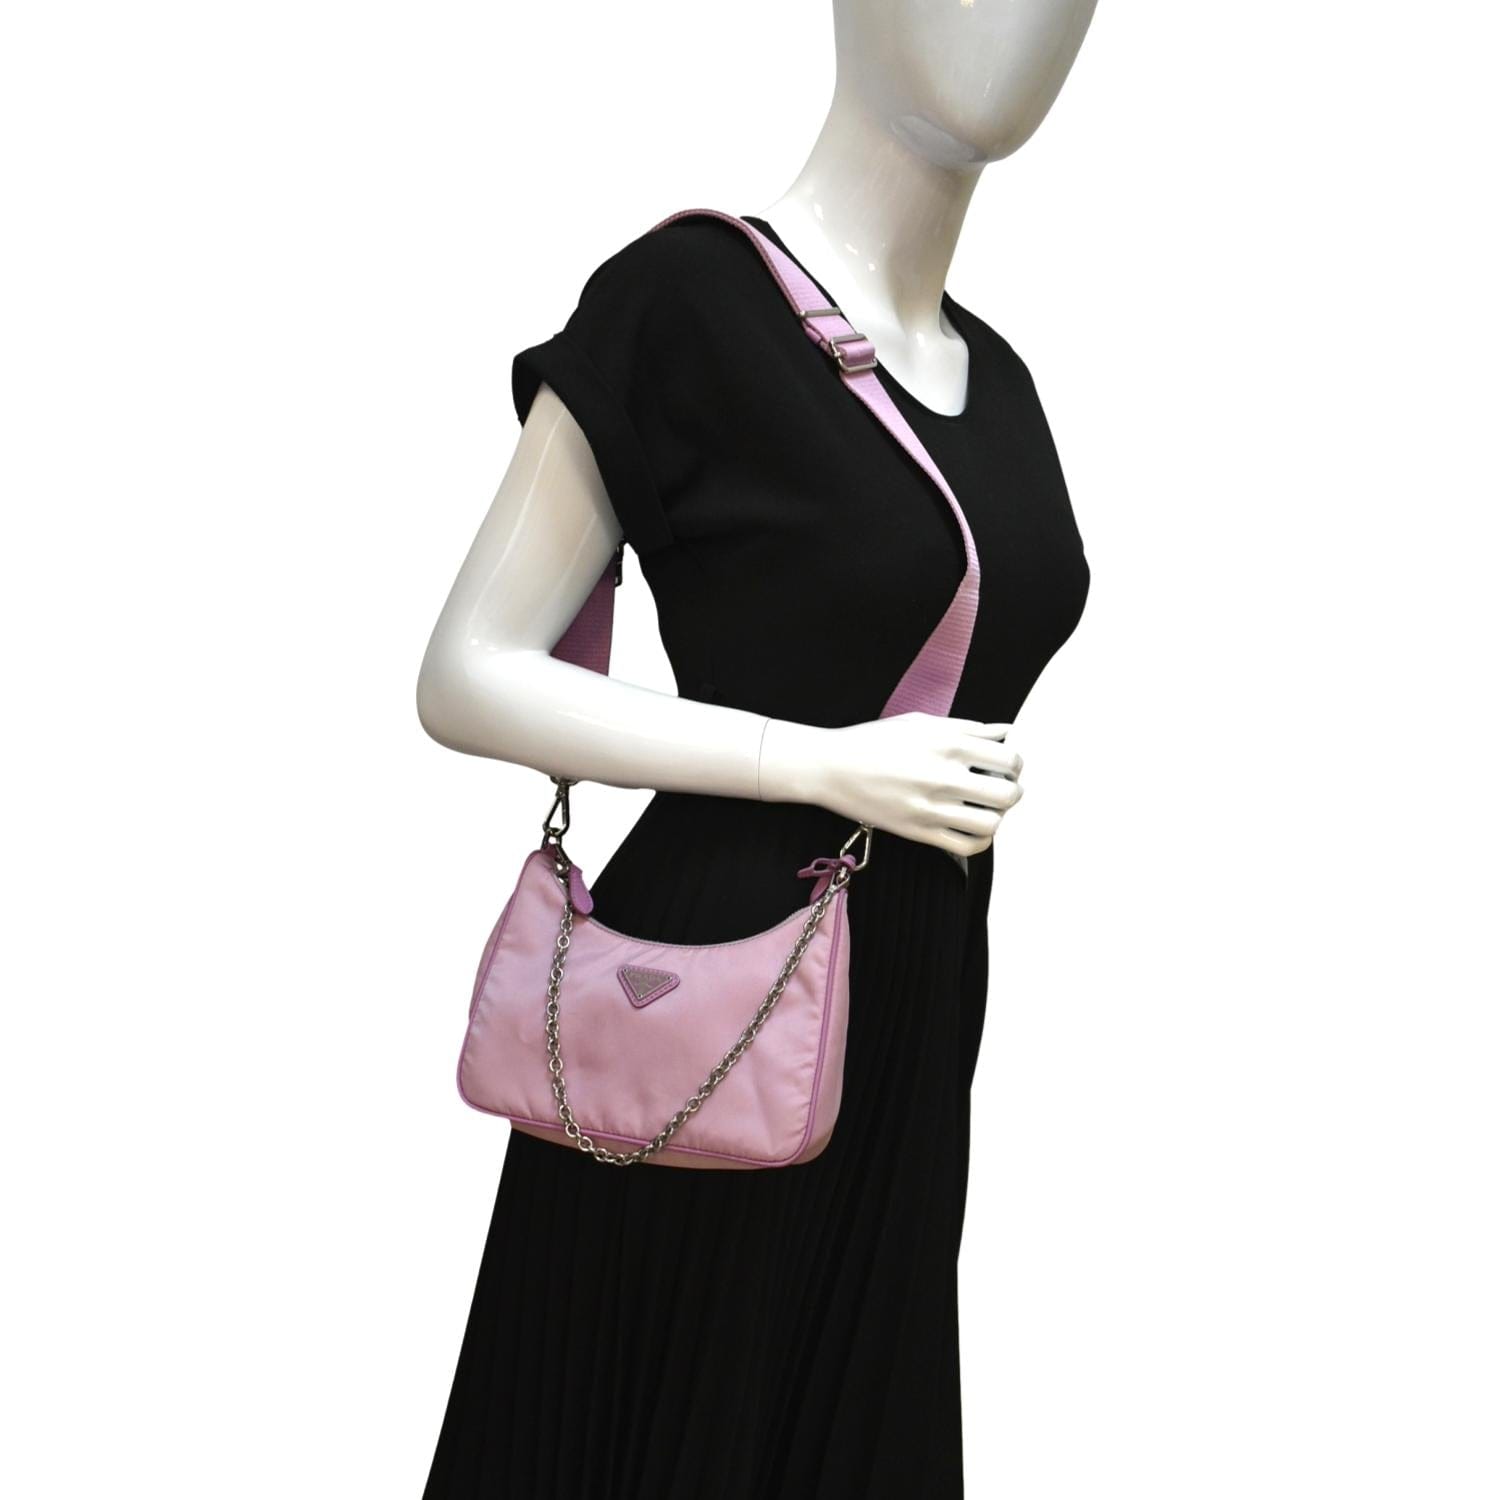 Prada Re-edition 2005 Leather Shoulder Bag in Pink